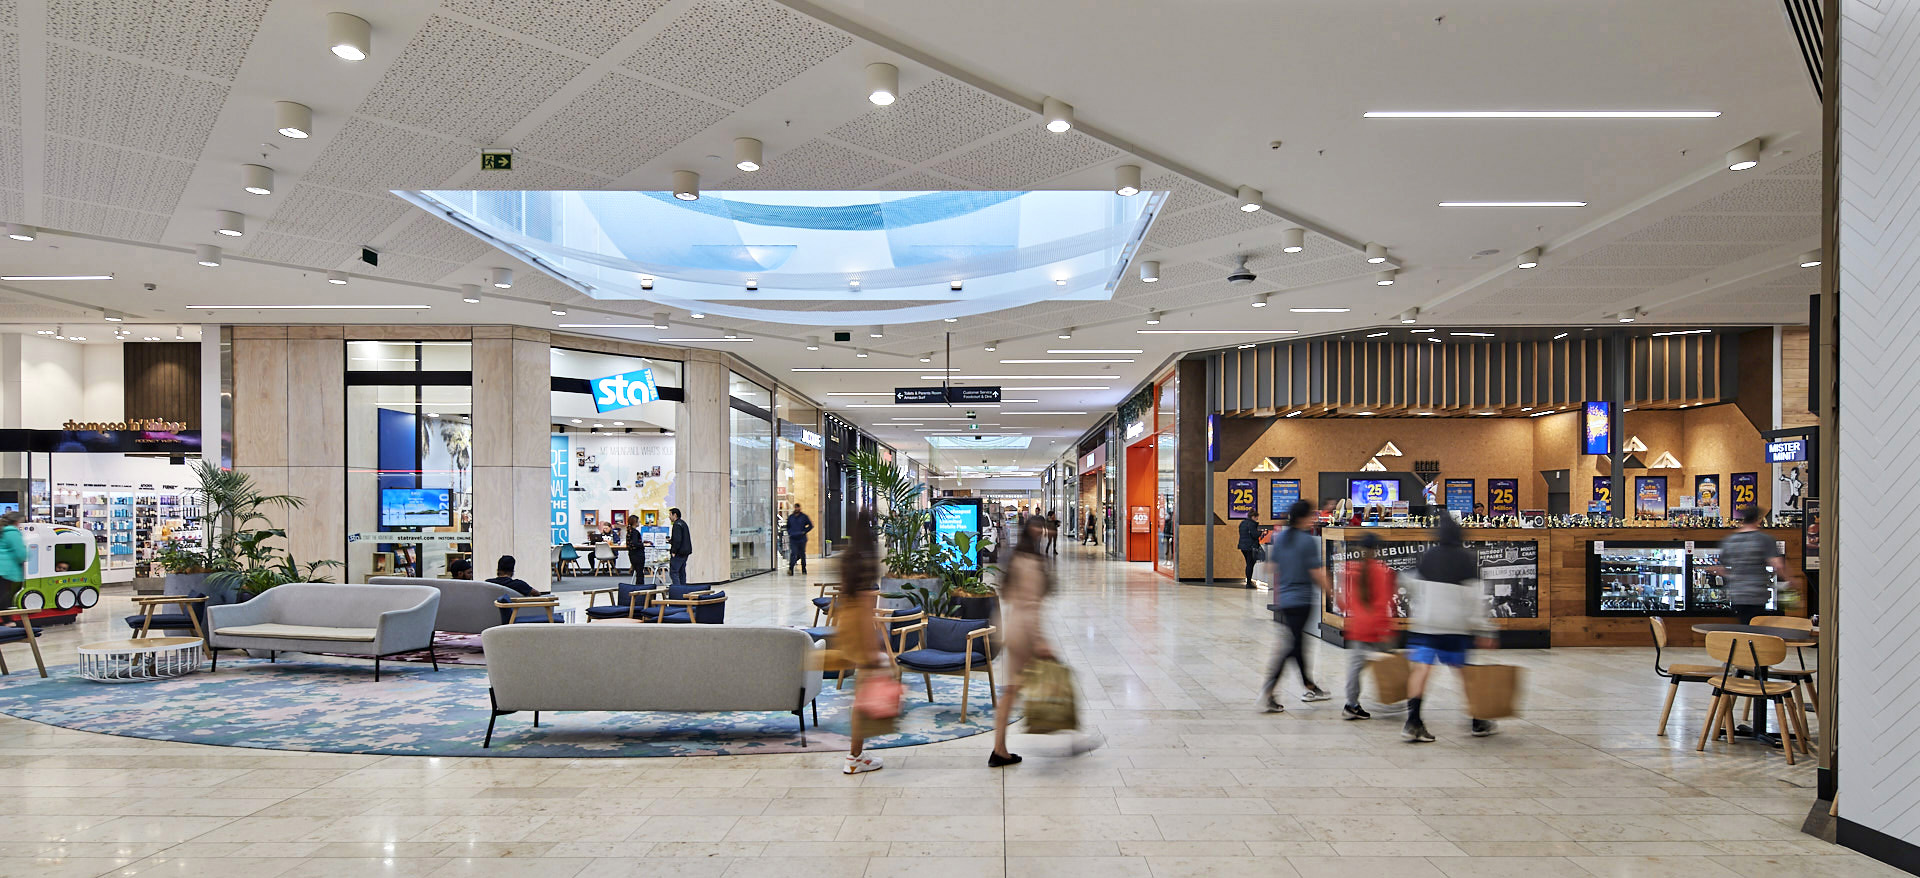 Bayfair Shopping Centre